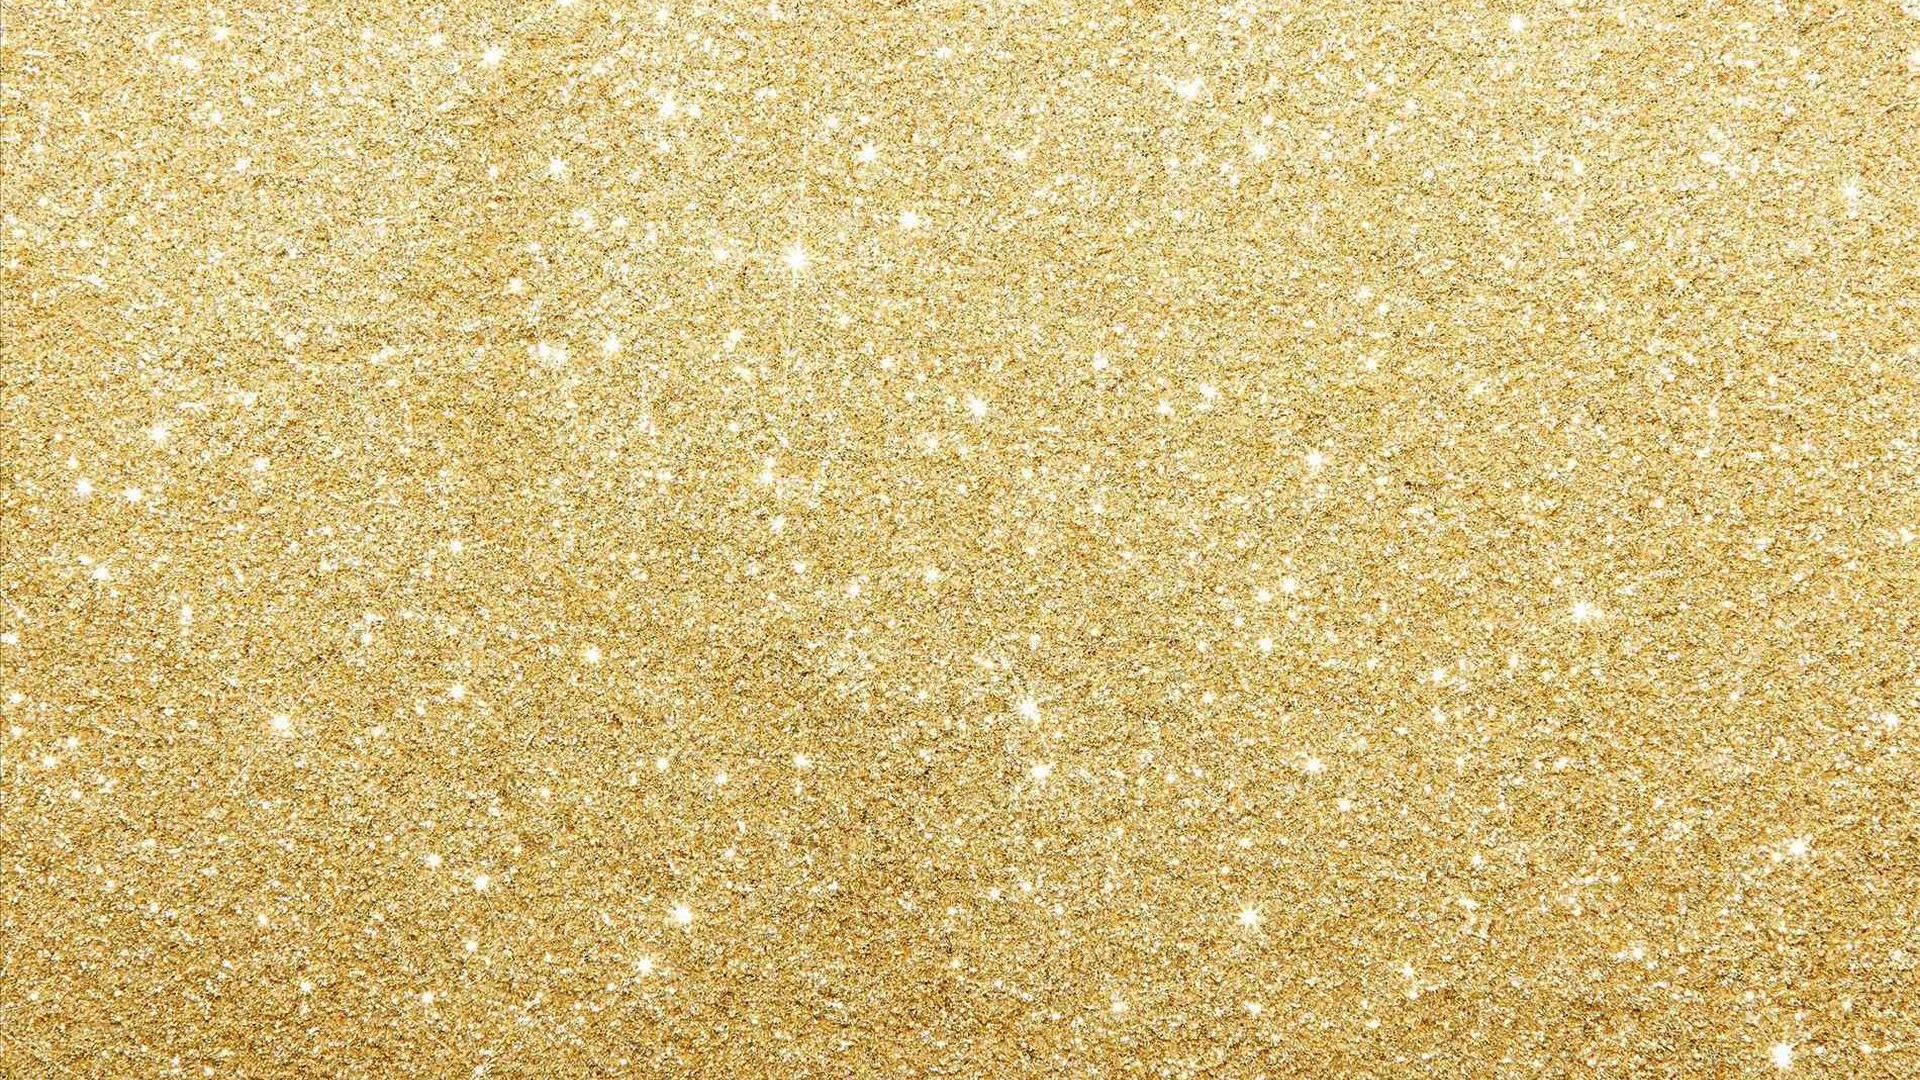 1920x1080 Wallpaper Gold Glitter 